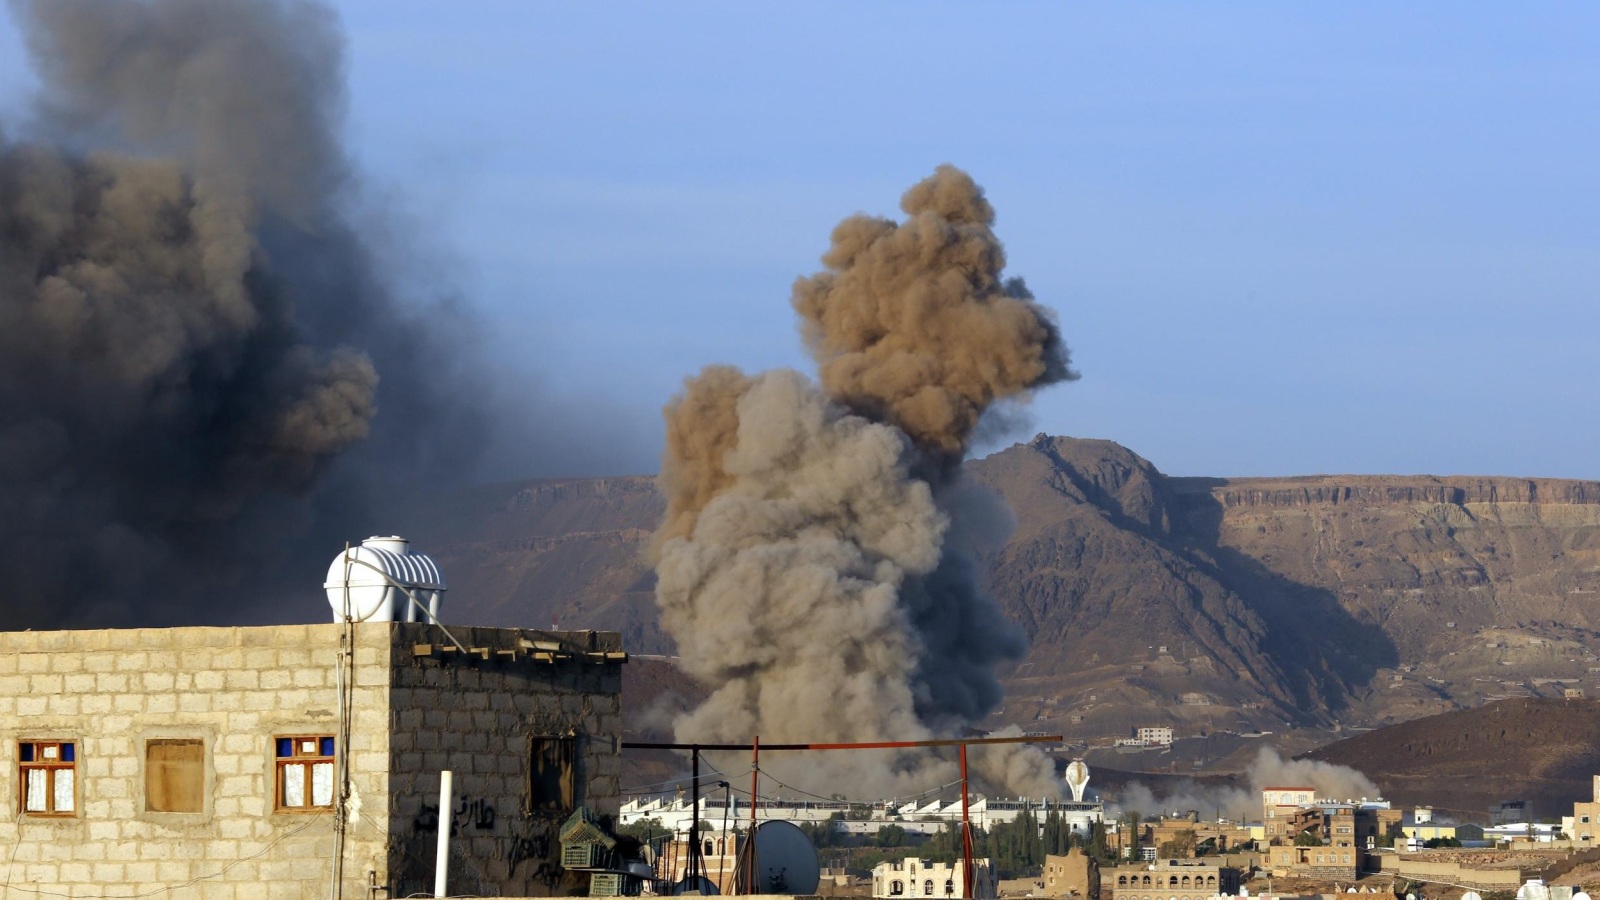 غارة شنها التحالف العربي على مواقع للحوثيين في صنعاء يوم 12 سبتمبر/أيلول الجاري (الأوروبية)